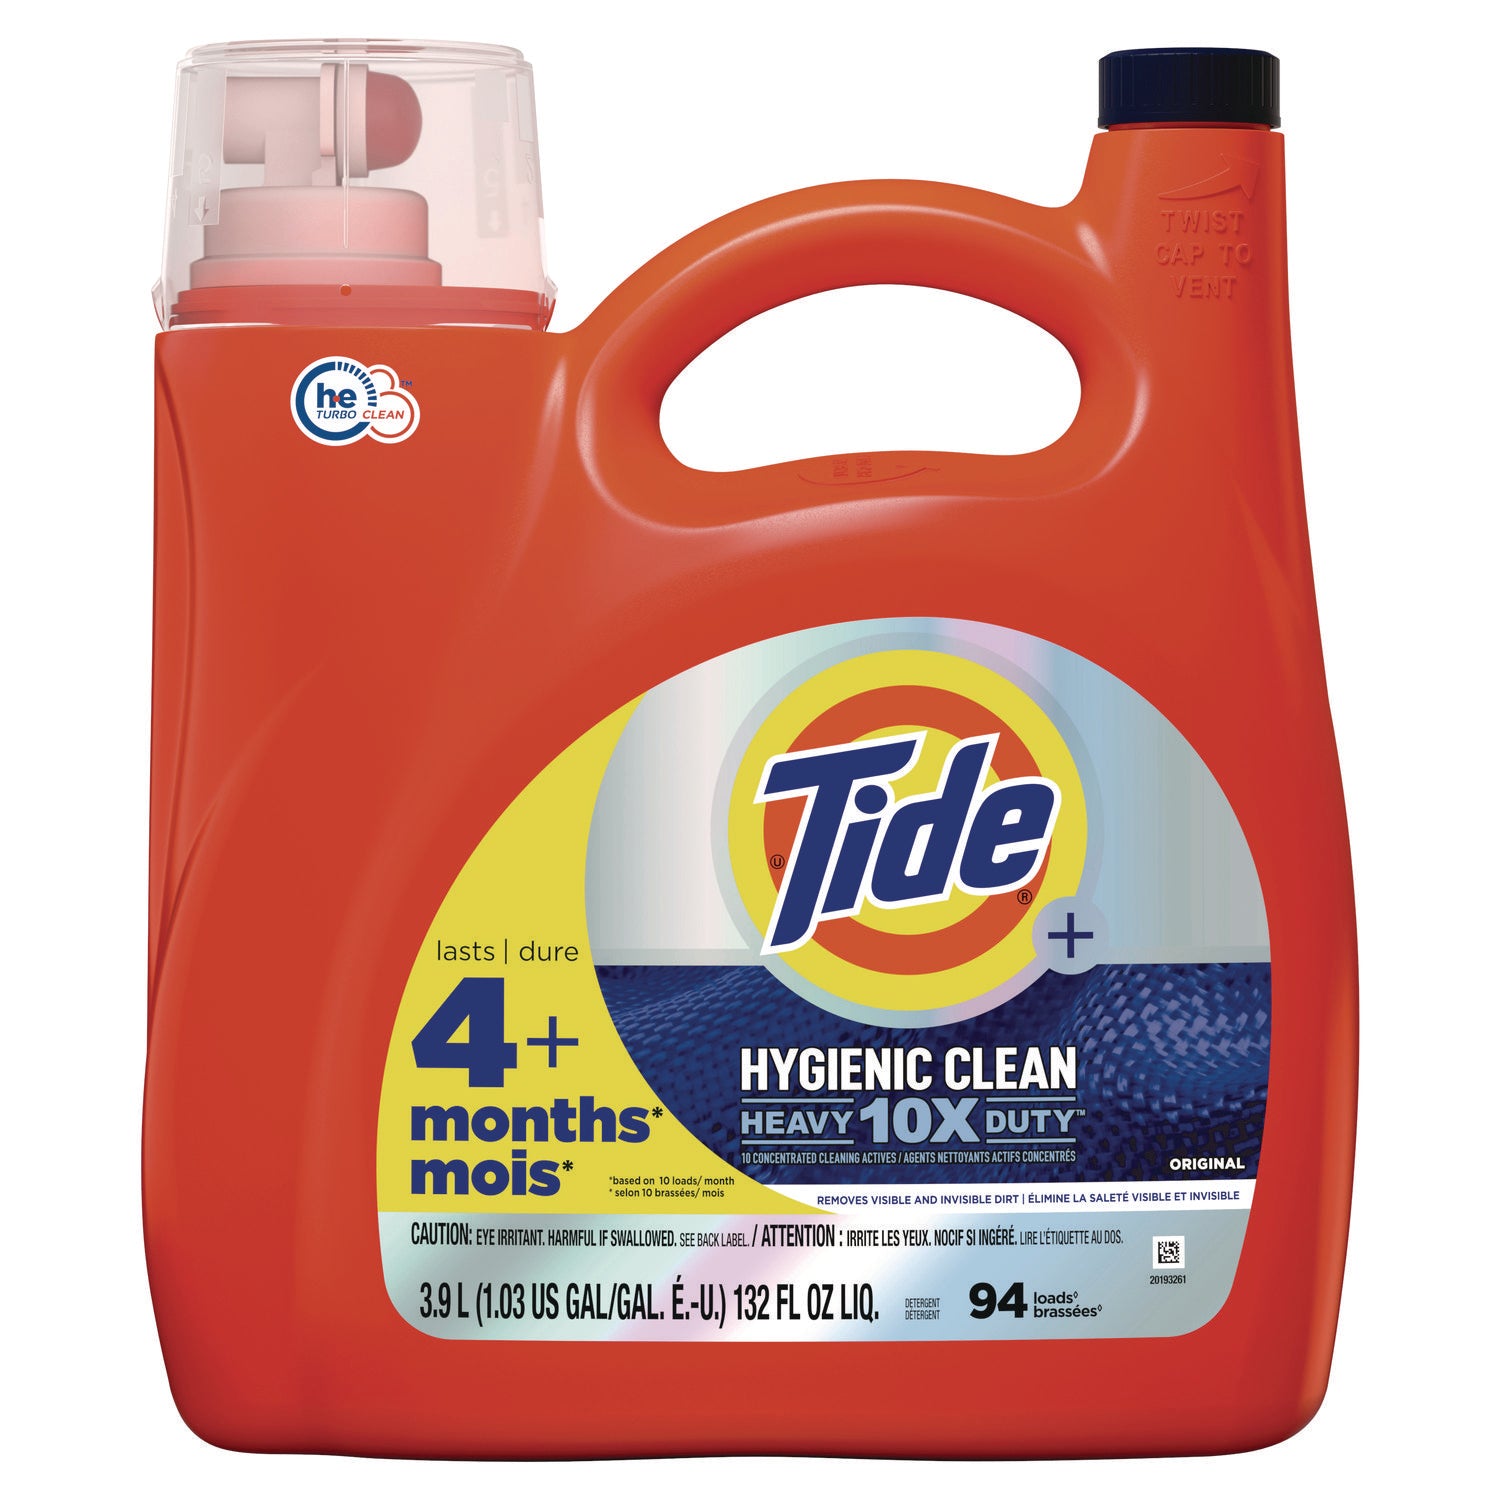 hygienic-clean-heavy-10x-duty-liquid-laundry-detergent-original-scent-132-oz-pour-bottle-4-carton_pgc12216 - 1